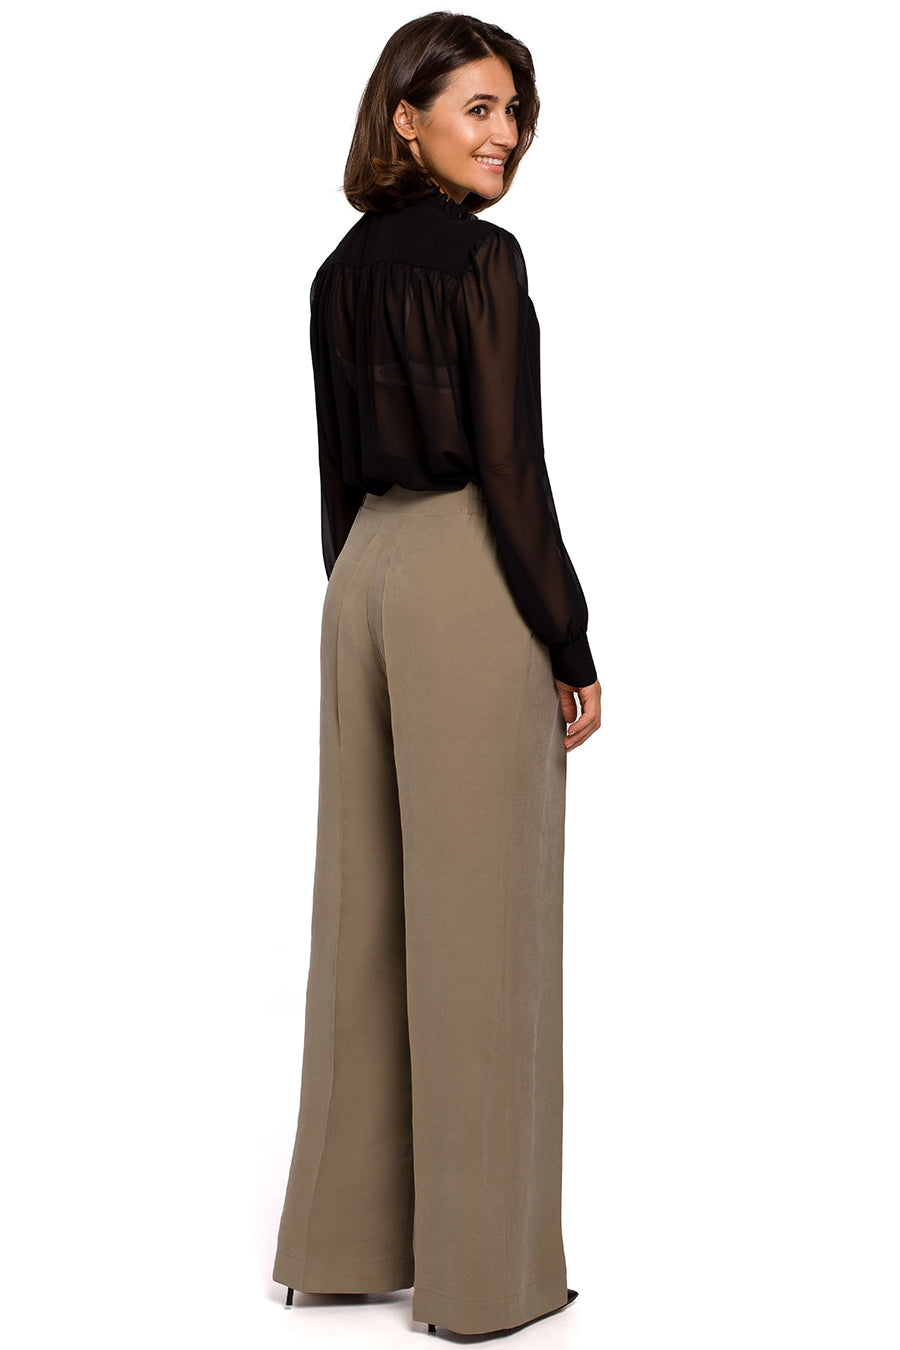 Teharissa női nadrág, Khaki színű 2